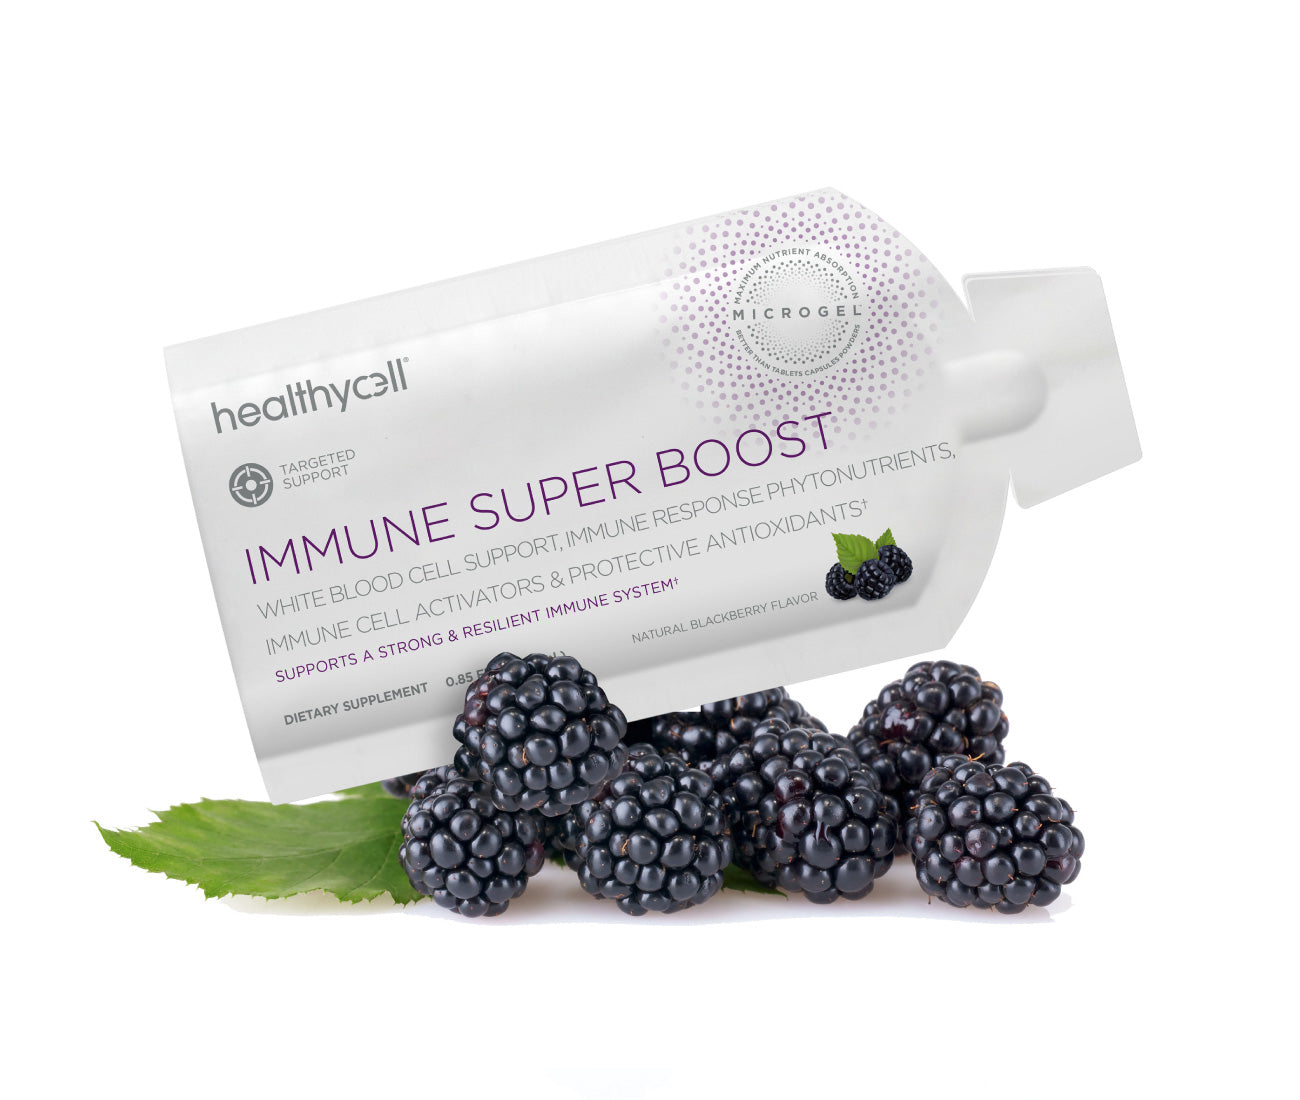 Immune Super Boost: Immune System Supplement